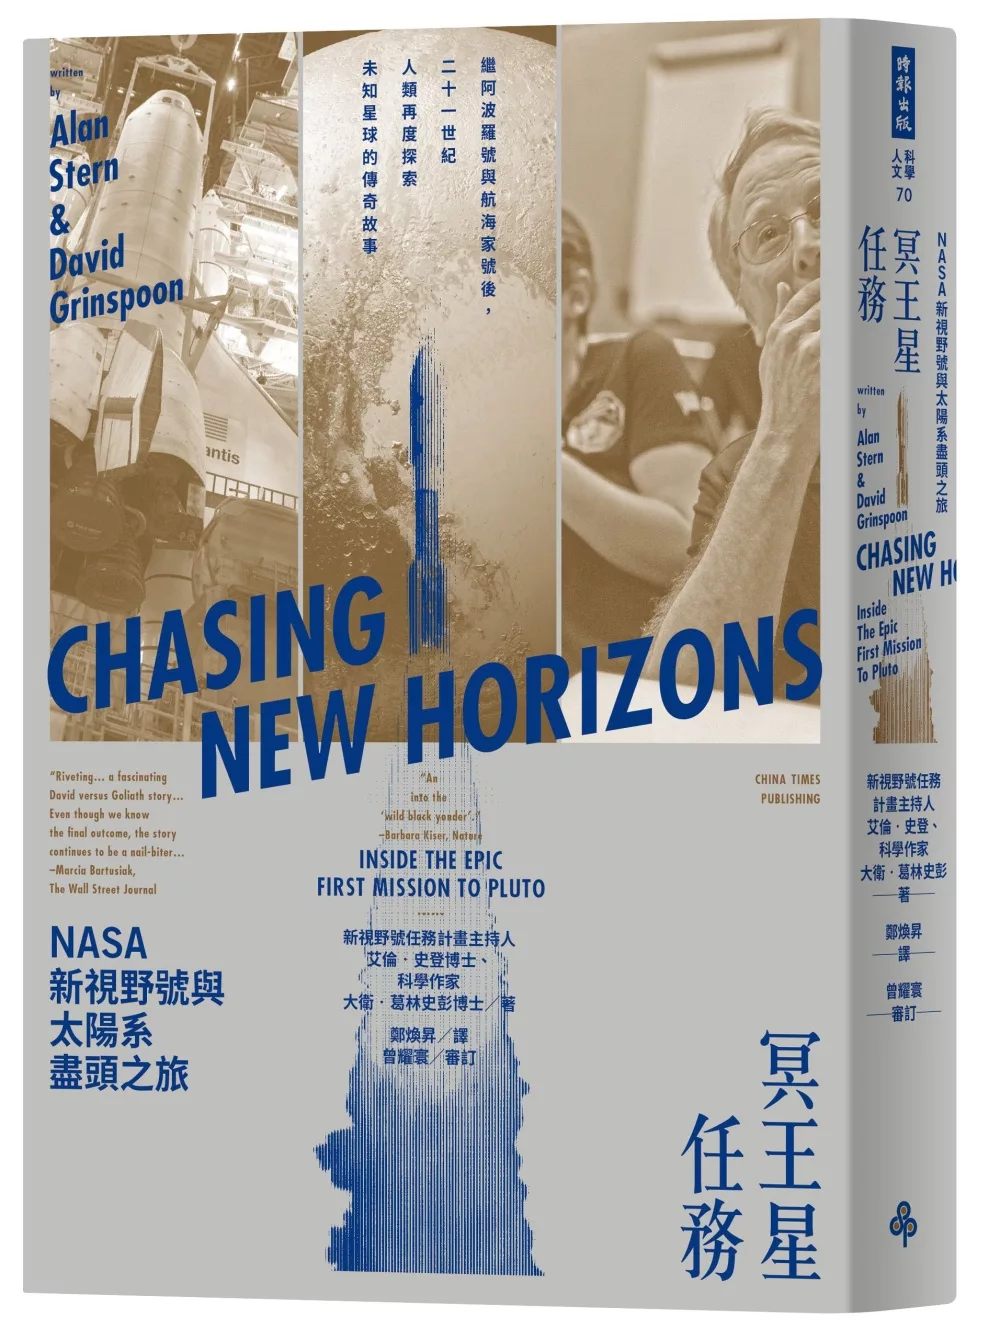 冥王星任務：NASA新視野號與太陽系盡頭之旅（繼阿波羅號與航海家號後，二十一世紀人類再度探索未知星球的傳奇故事）